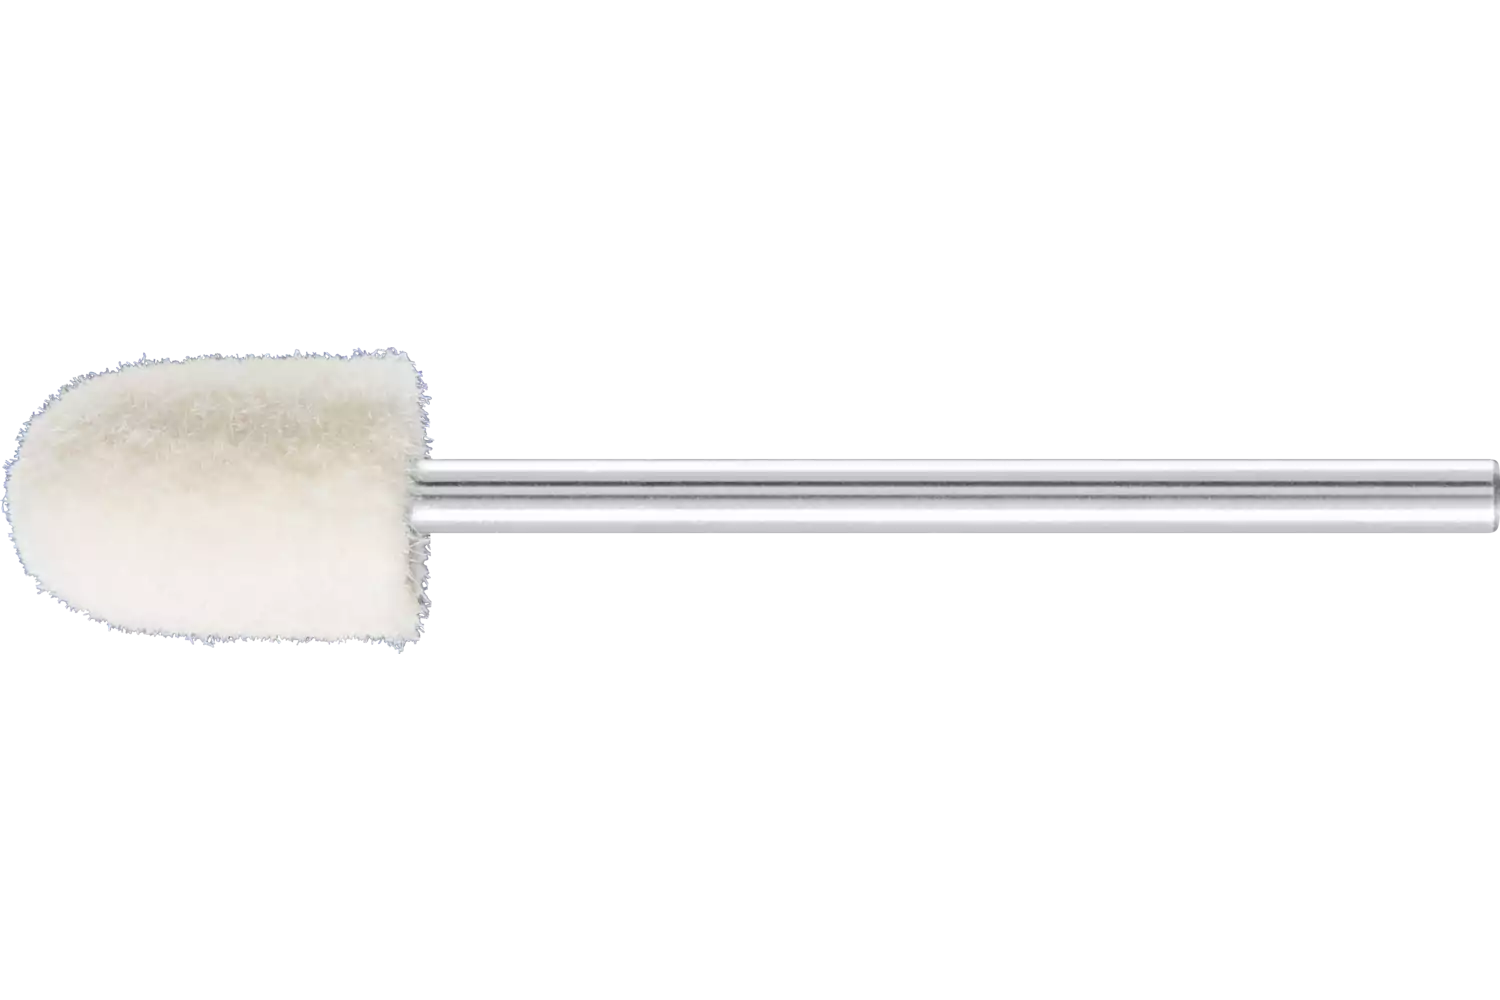 Feltri con gambo per lucidare medio-duri forma cilindrica con testa a sfera Ø 8x12 mm, gambo Ø 2,35 mm 1